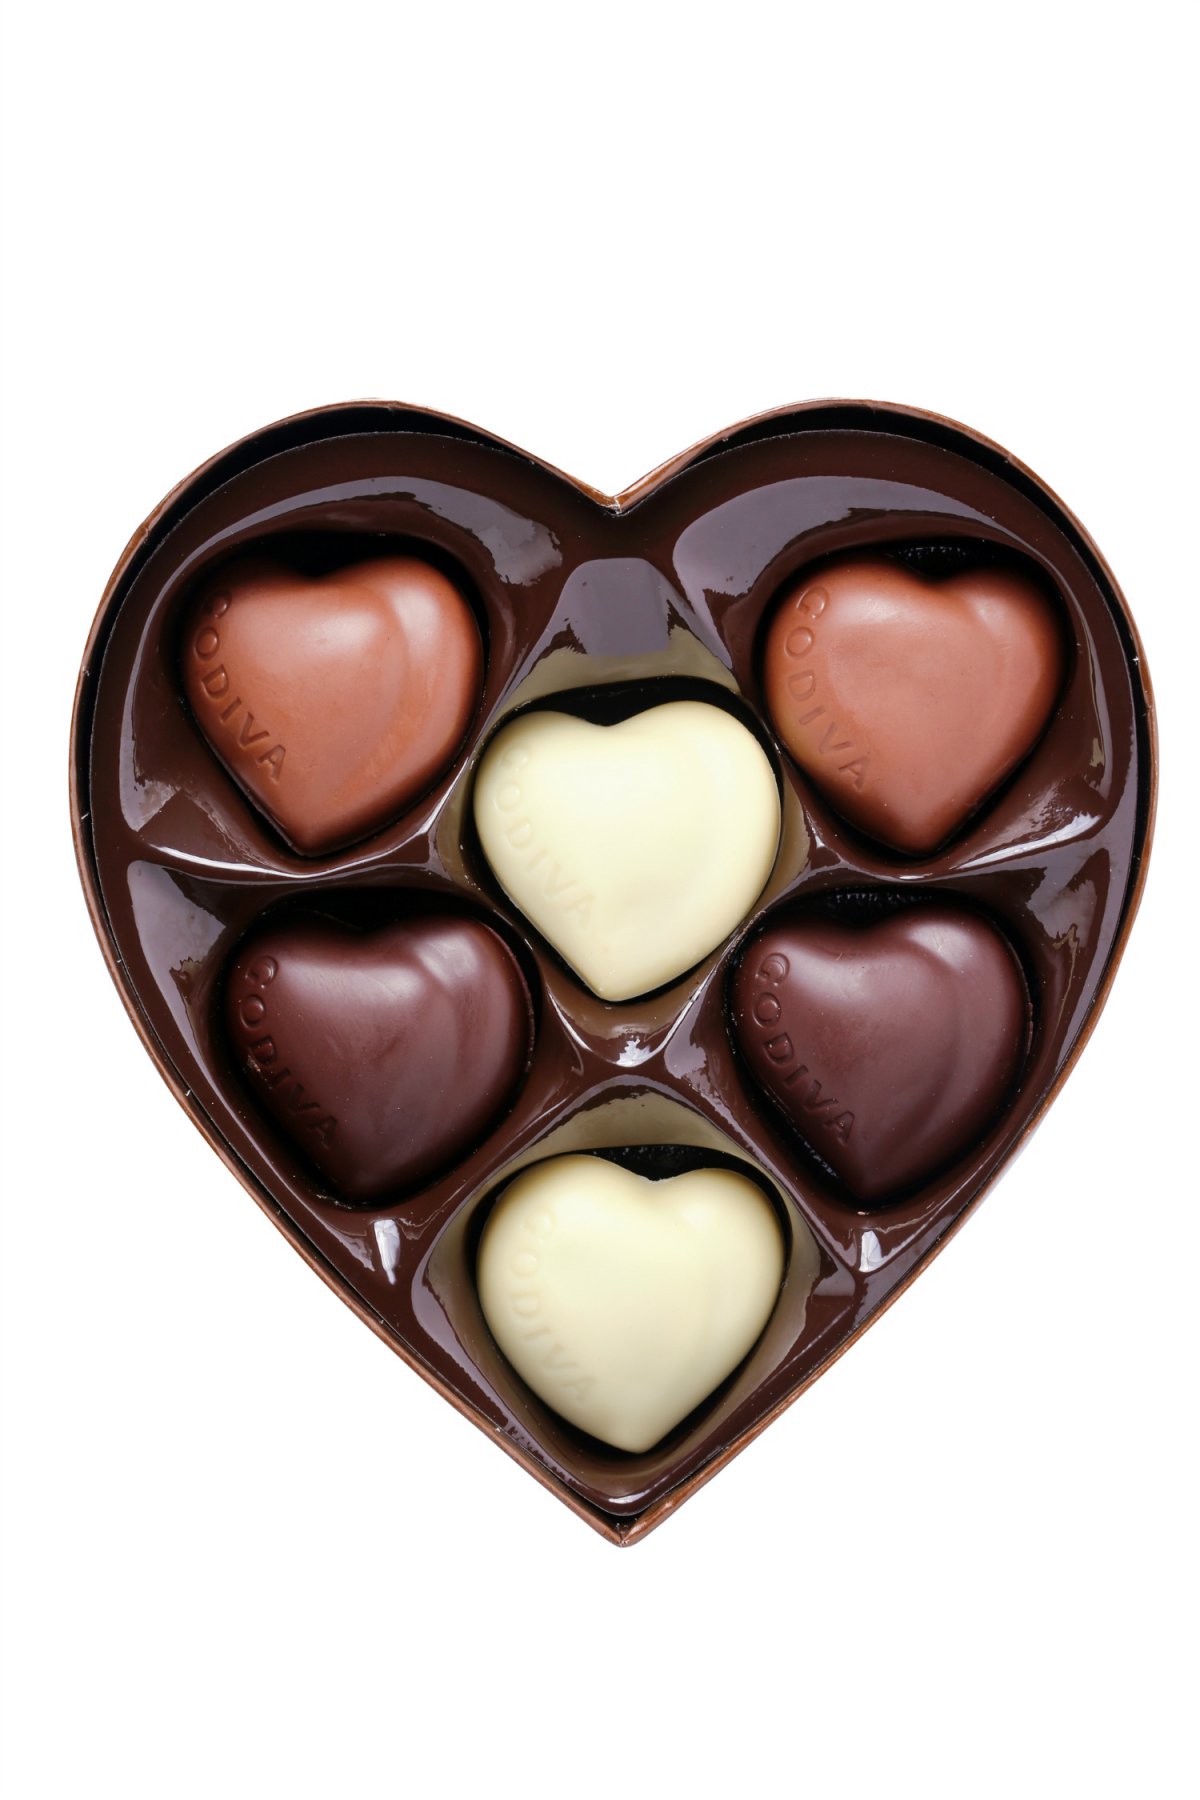 微商心形减肥巧克力图片